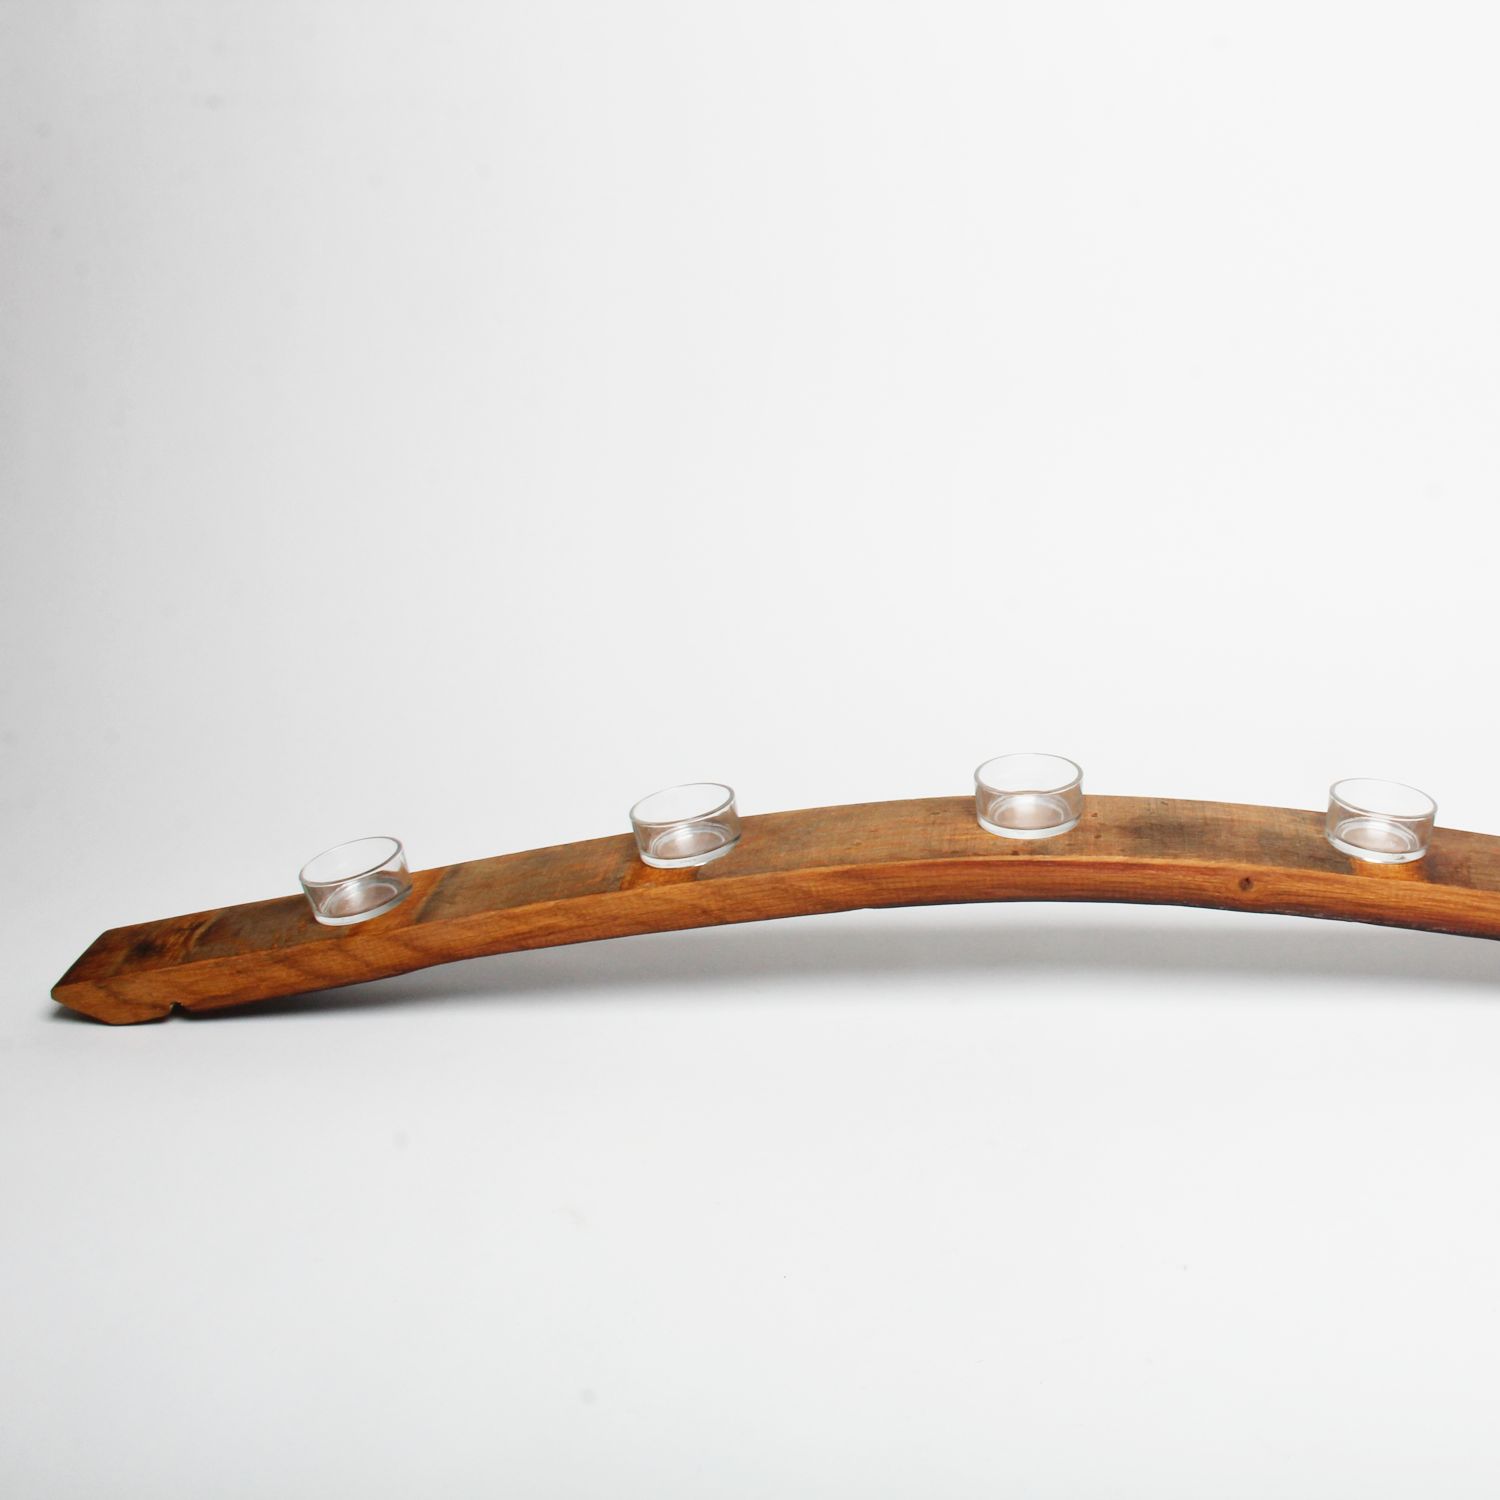 Wineplanks: Candleholder Full Product Image 2 of 3